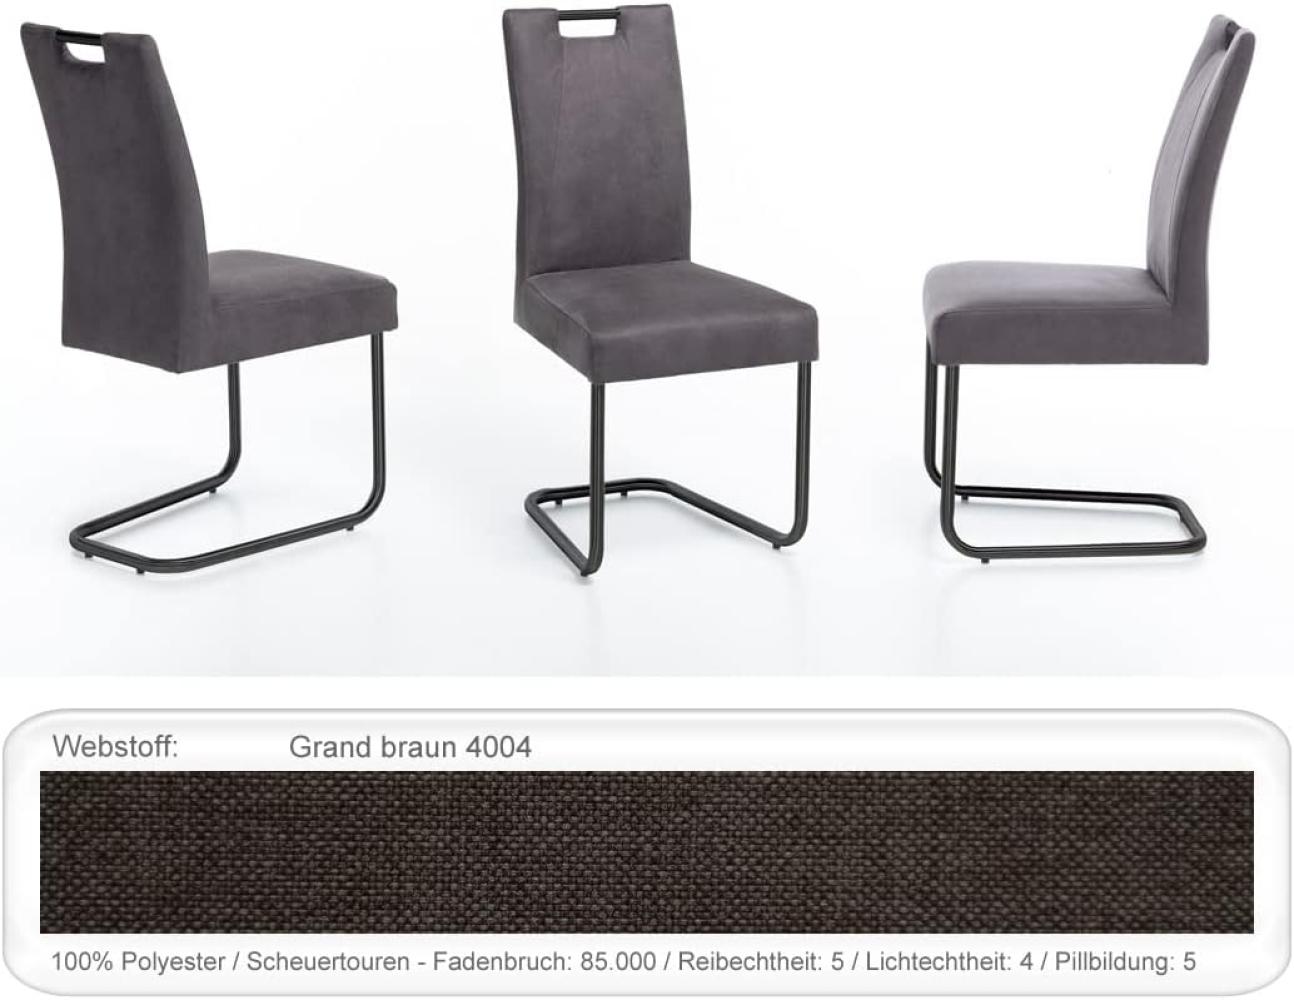 6x Schwingstuhl Kato Griff Gestell schwarz Esszimmerstuhl Küchenstuhl Grand braun Bild 1